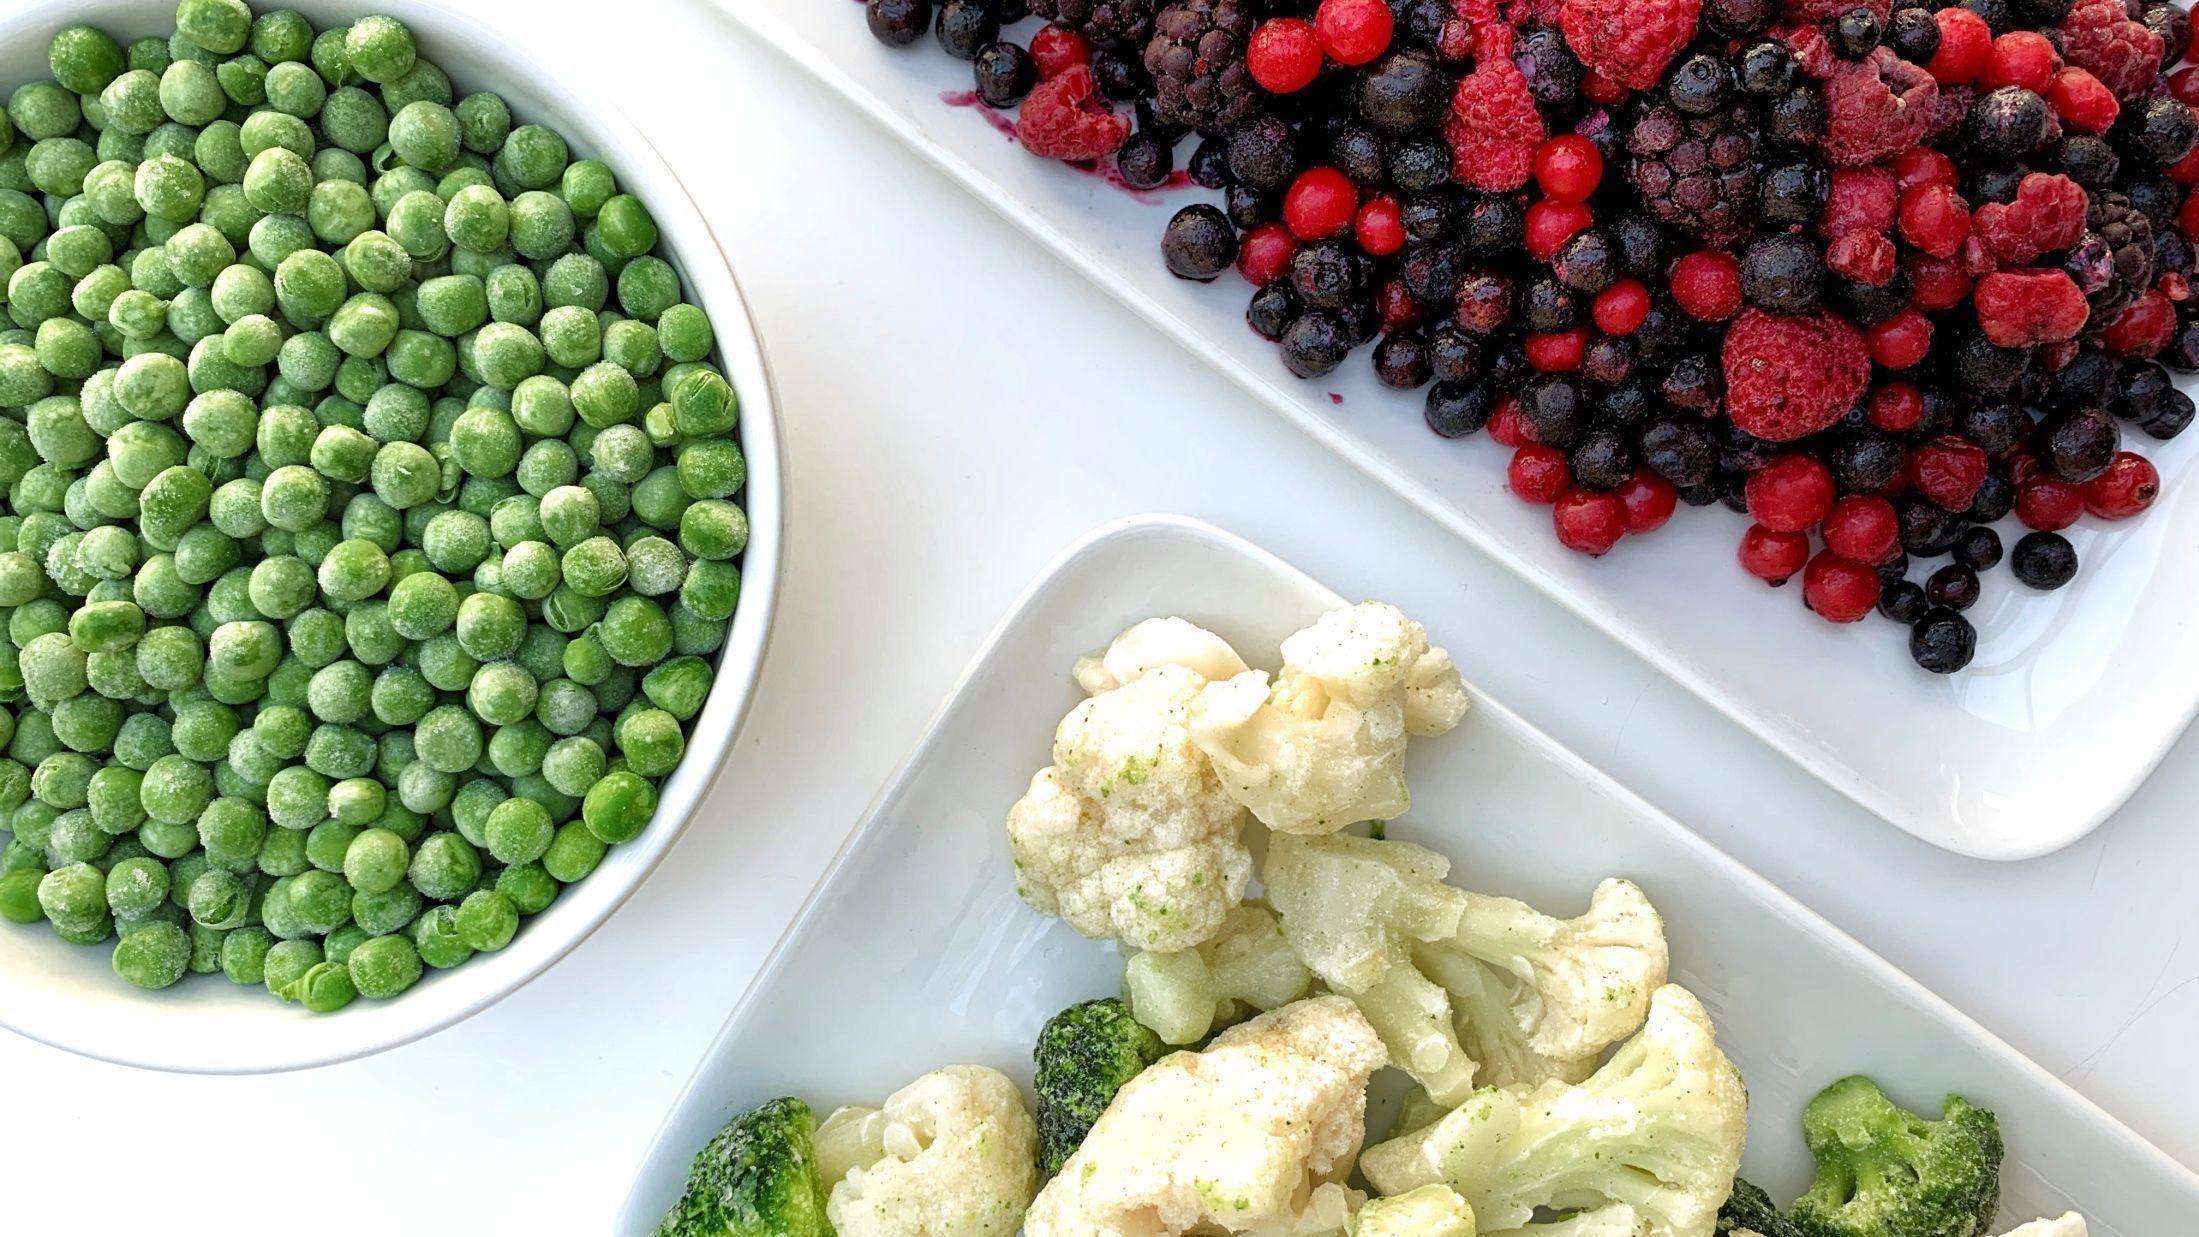 GODT FRYST: Erter, bær og grønnsaker som blomkål og brokkoli. Dette er noen av varene kokkene mener du kan velge i frysedisken. Foto: Tjodunn Dyrnes/VG